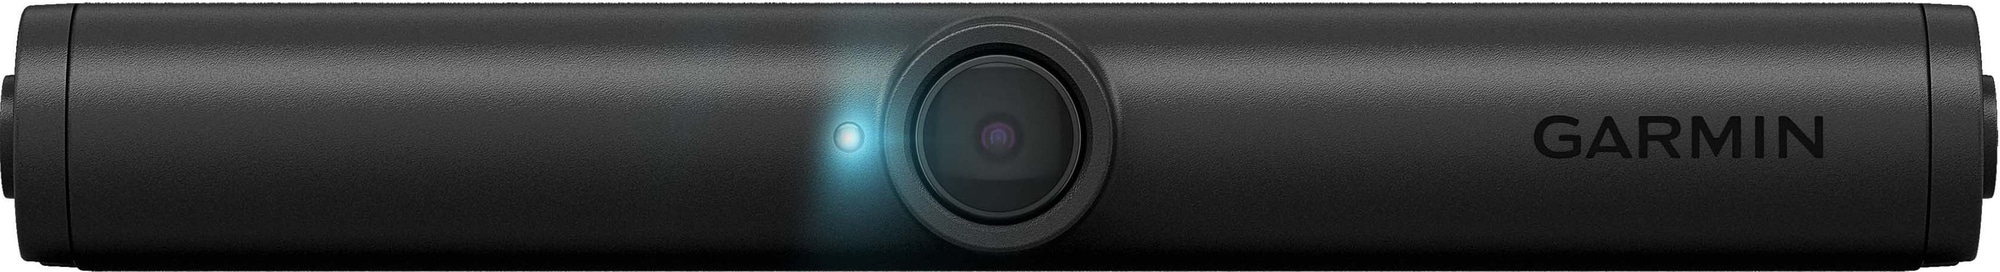 Garmin BC40 trådlös backkamera - Elgiganten